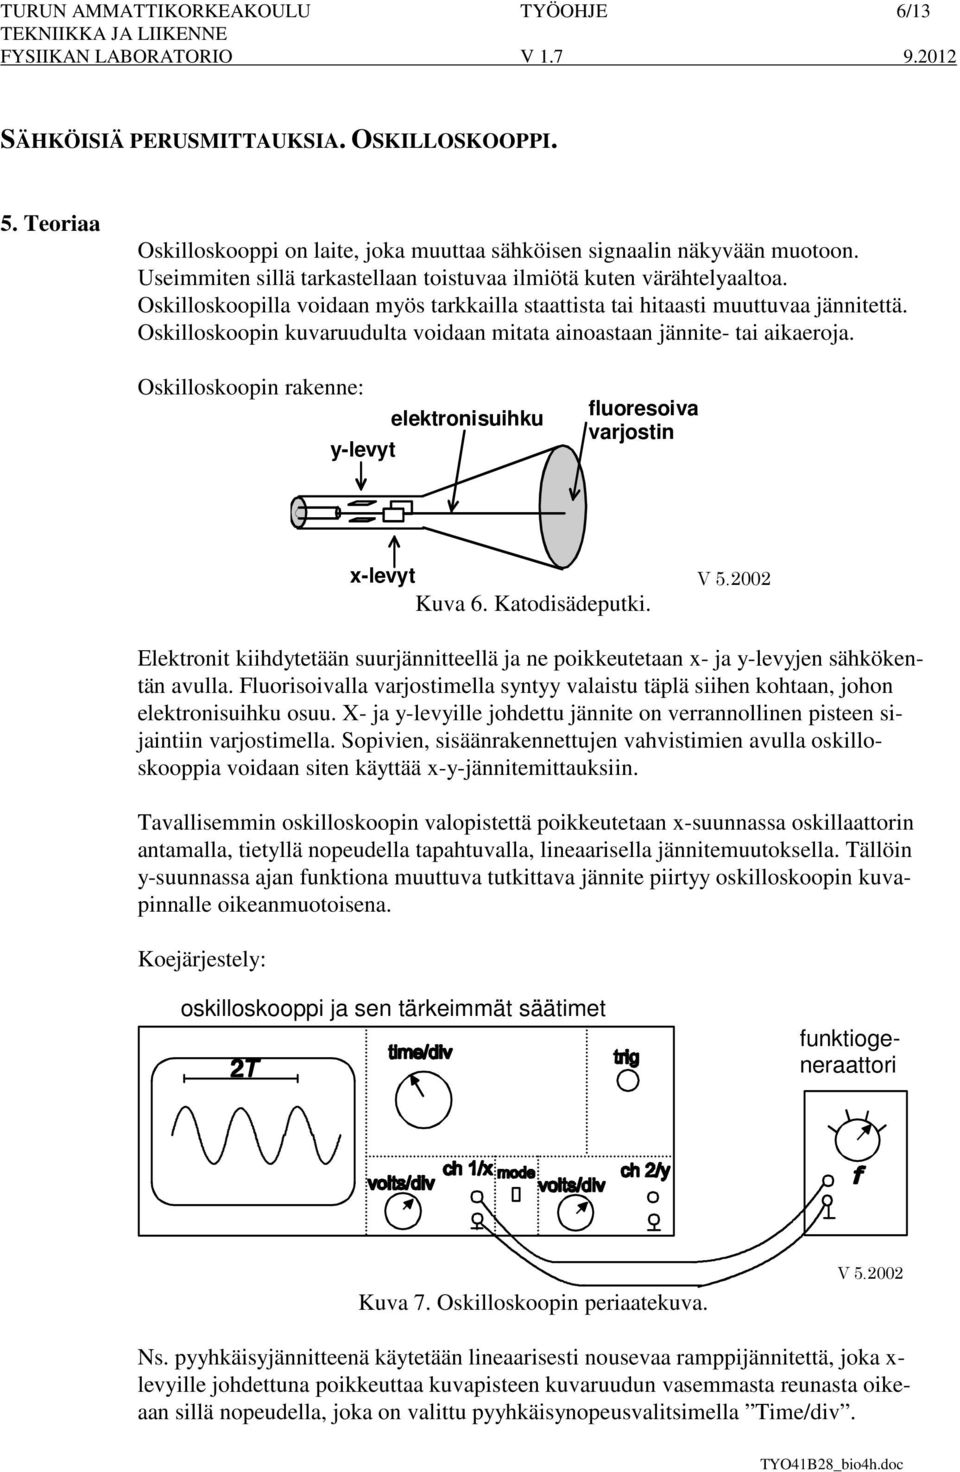 Oskilloskoopin kuvaruudulta voidaan mitata ainoastaan jännite- tai aikaeroja. Oskilloskoopin rakenne: y-levyt elektronisuihku fluoresoiva varjostin x-levyt Kuva 6. Katodisädeputki. V 5.